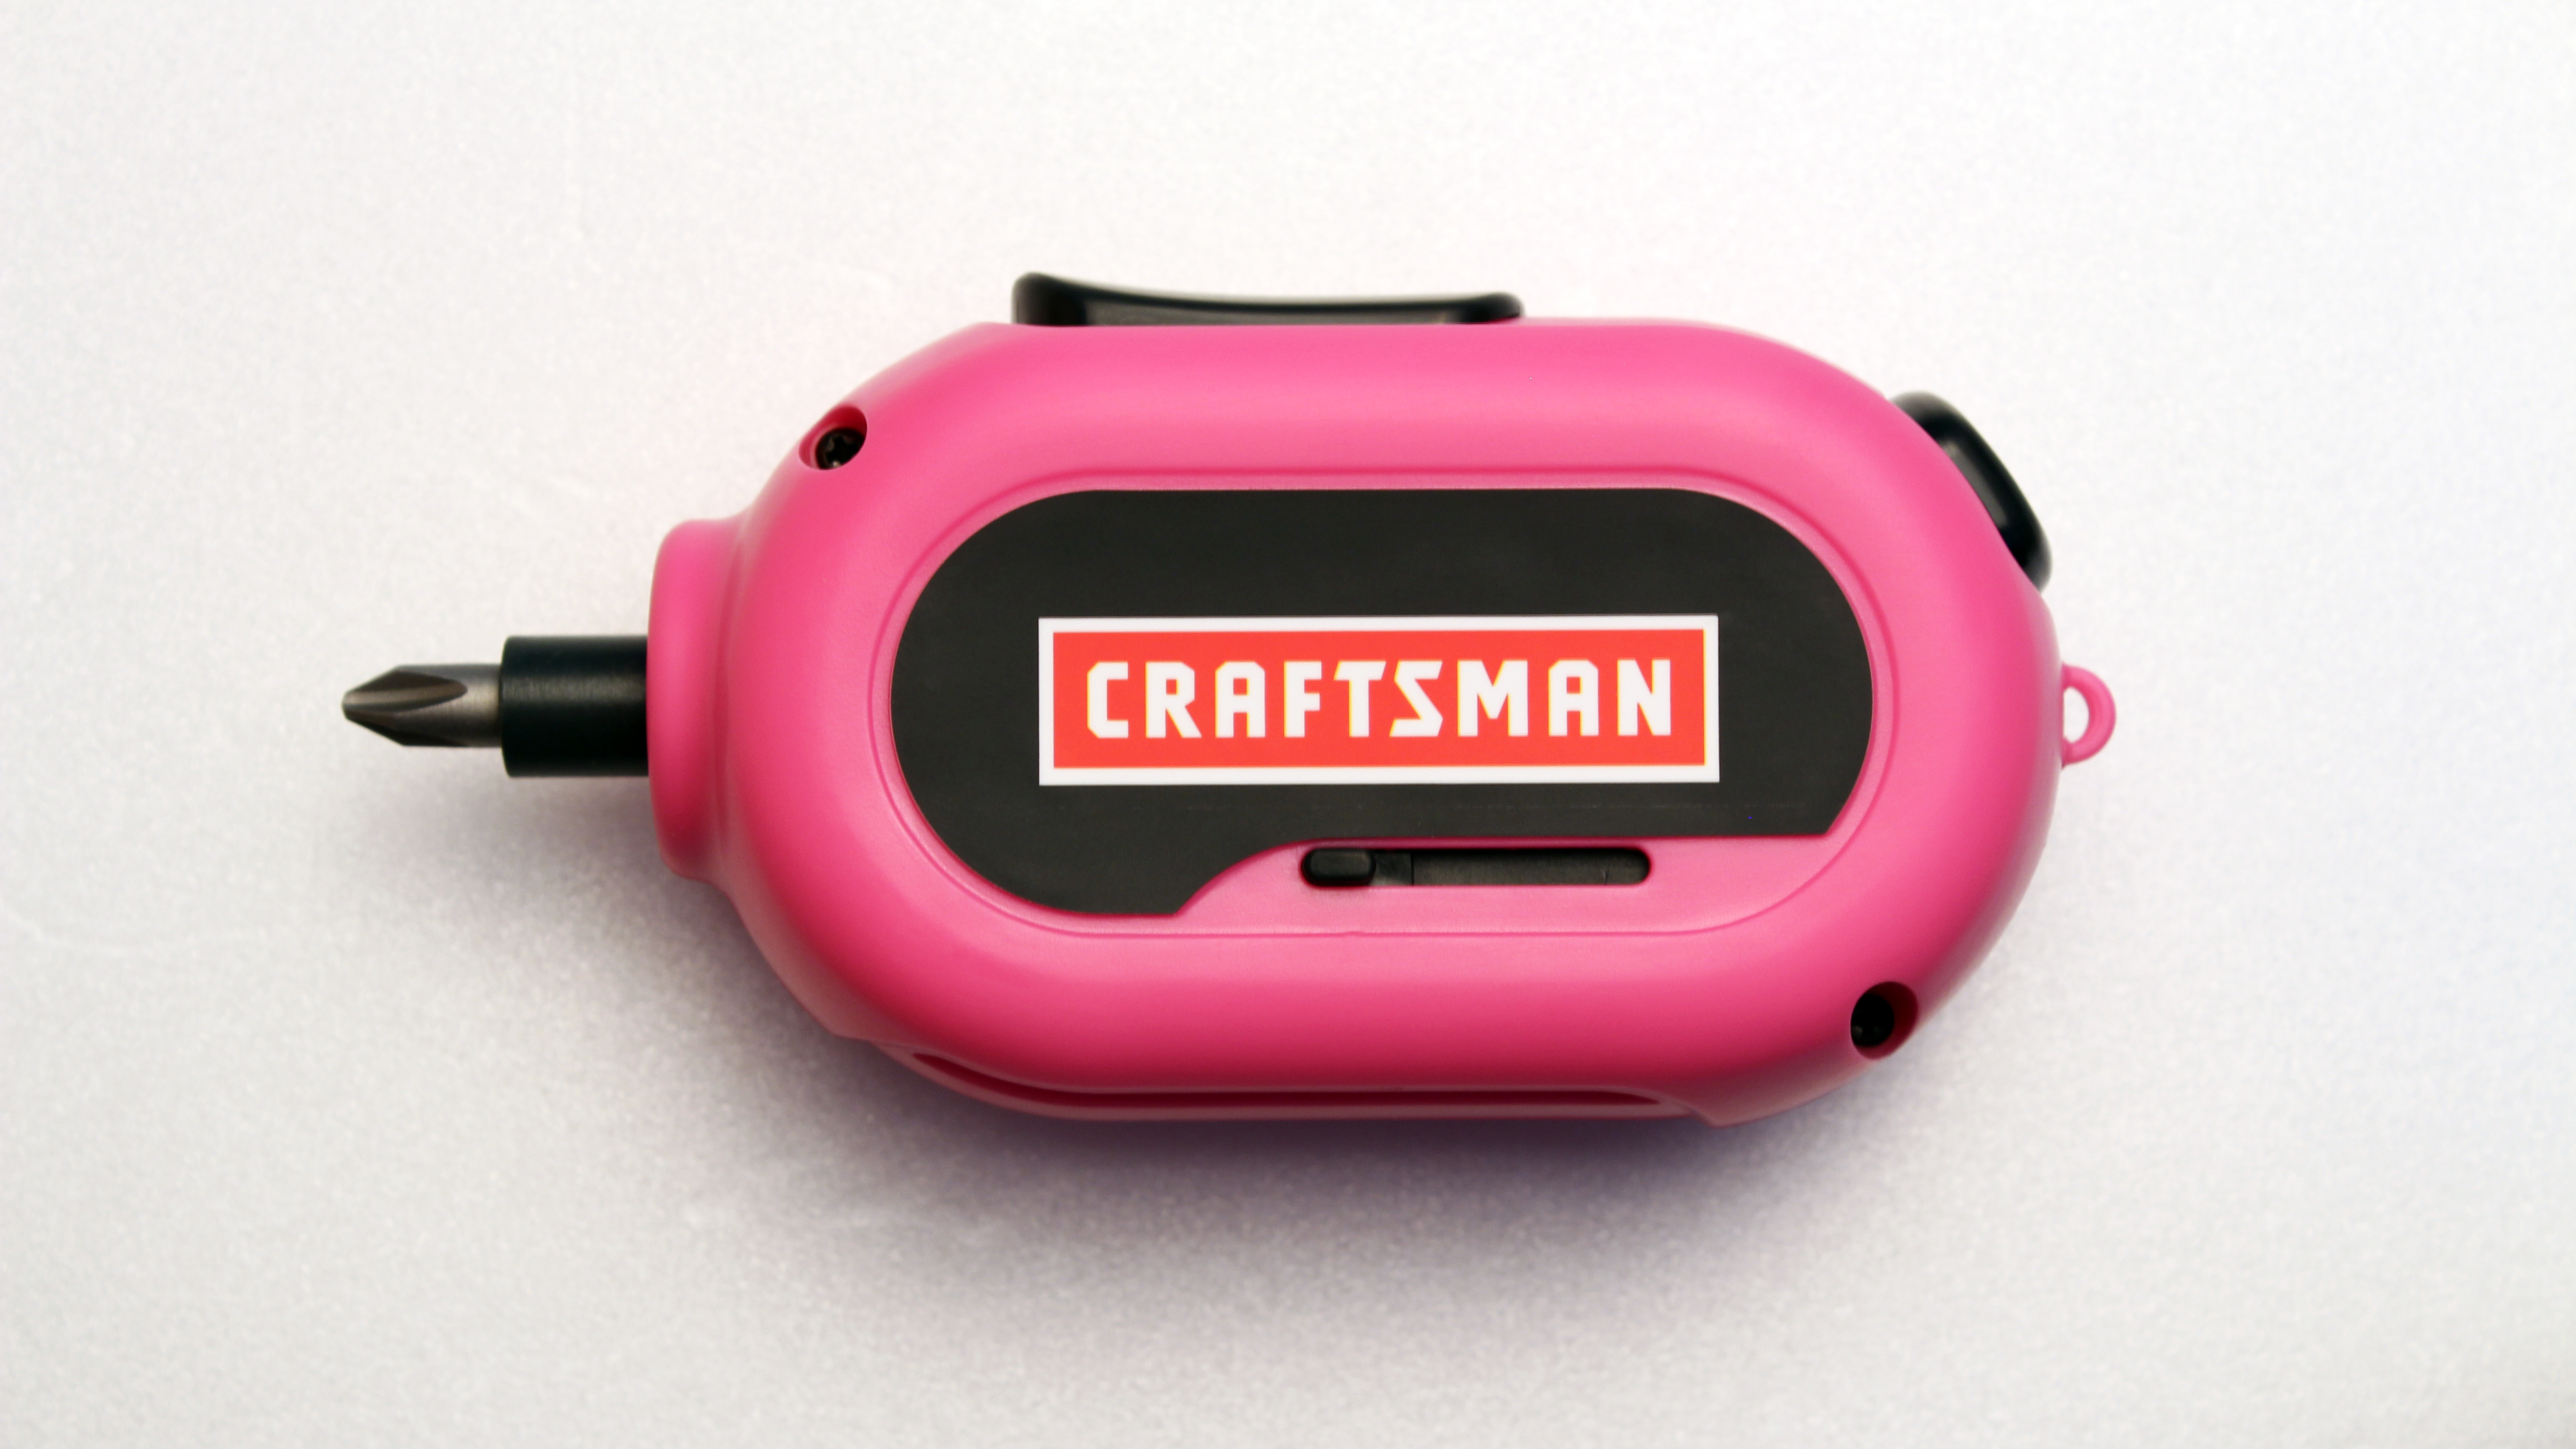 Craftsman Pink 3.7V Cordless Screwdriver